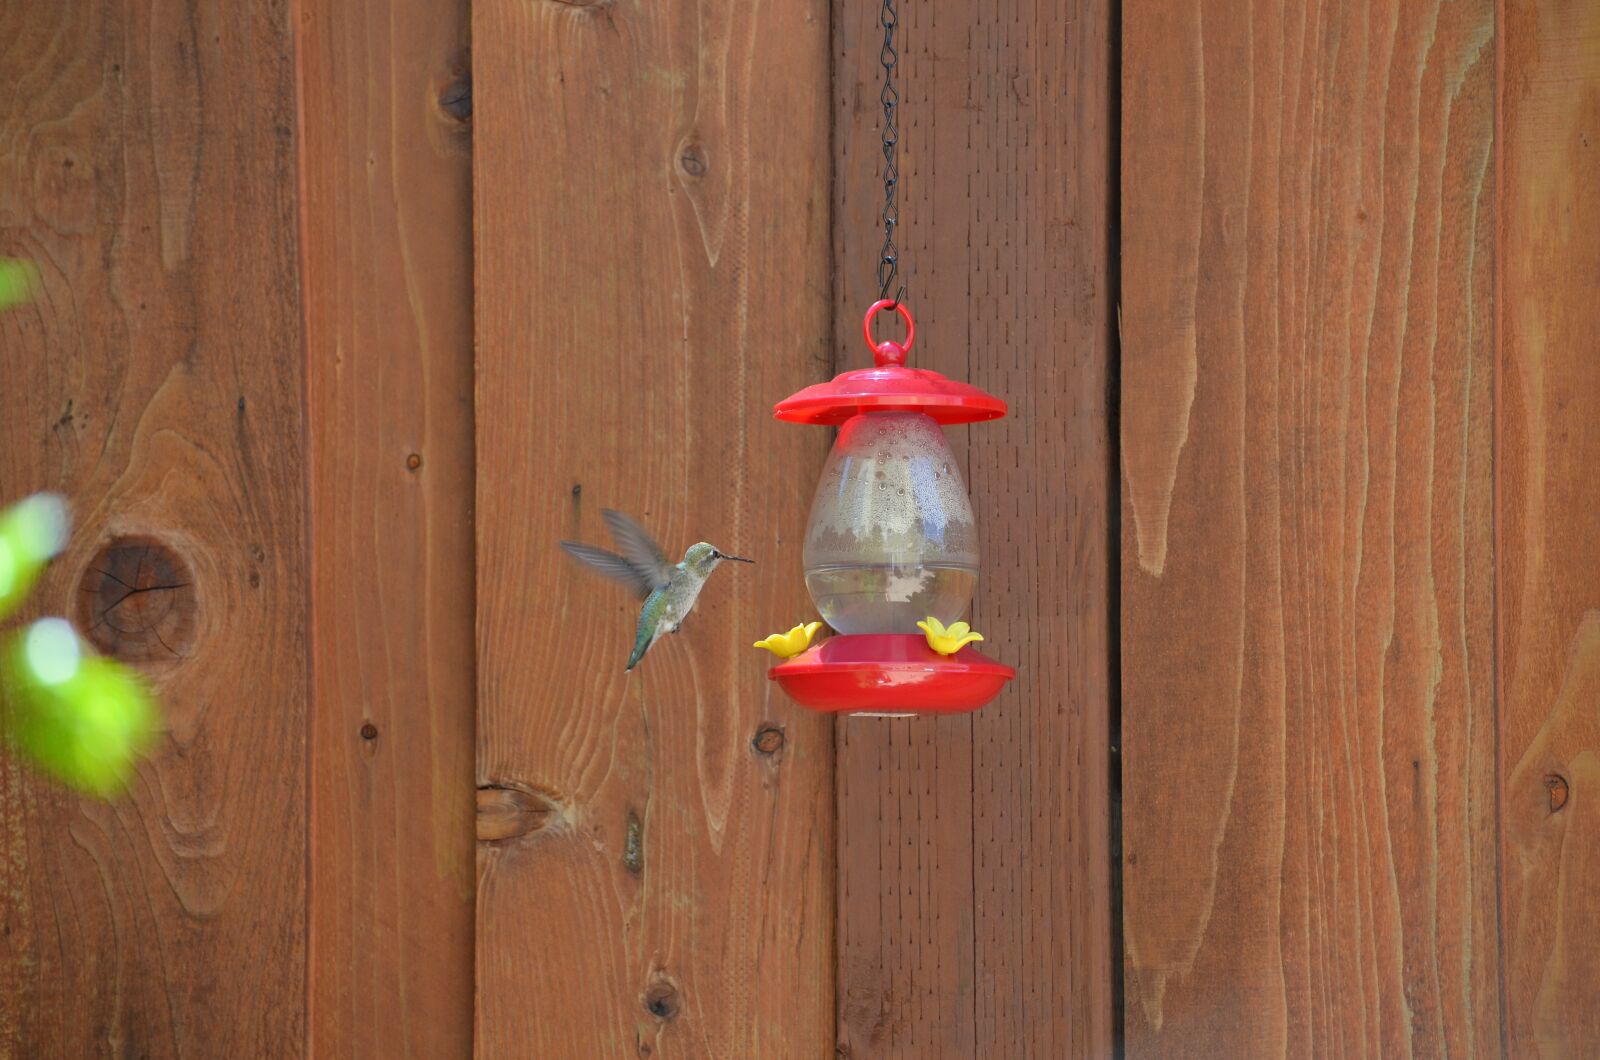 Nikon D5100 sample photo. Hummingbird feeder, bird, nature photography